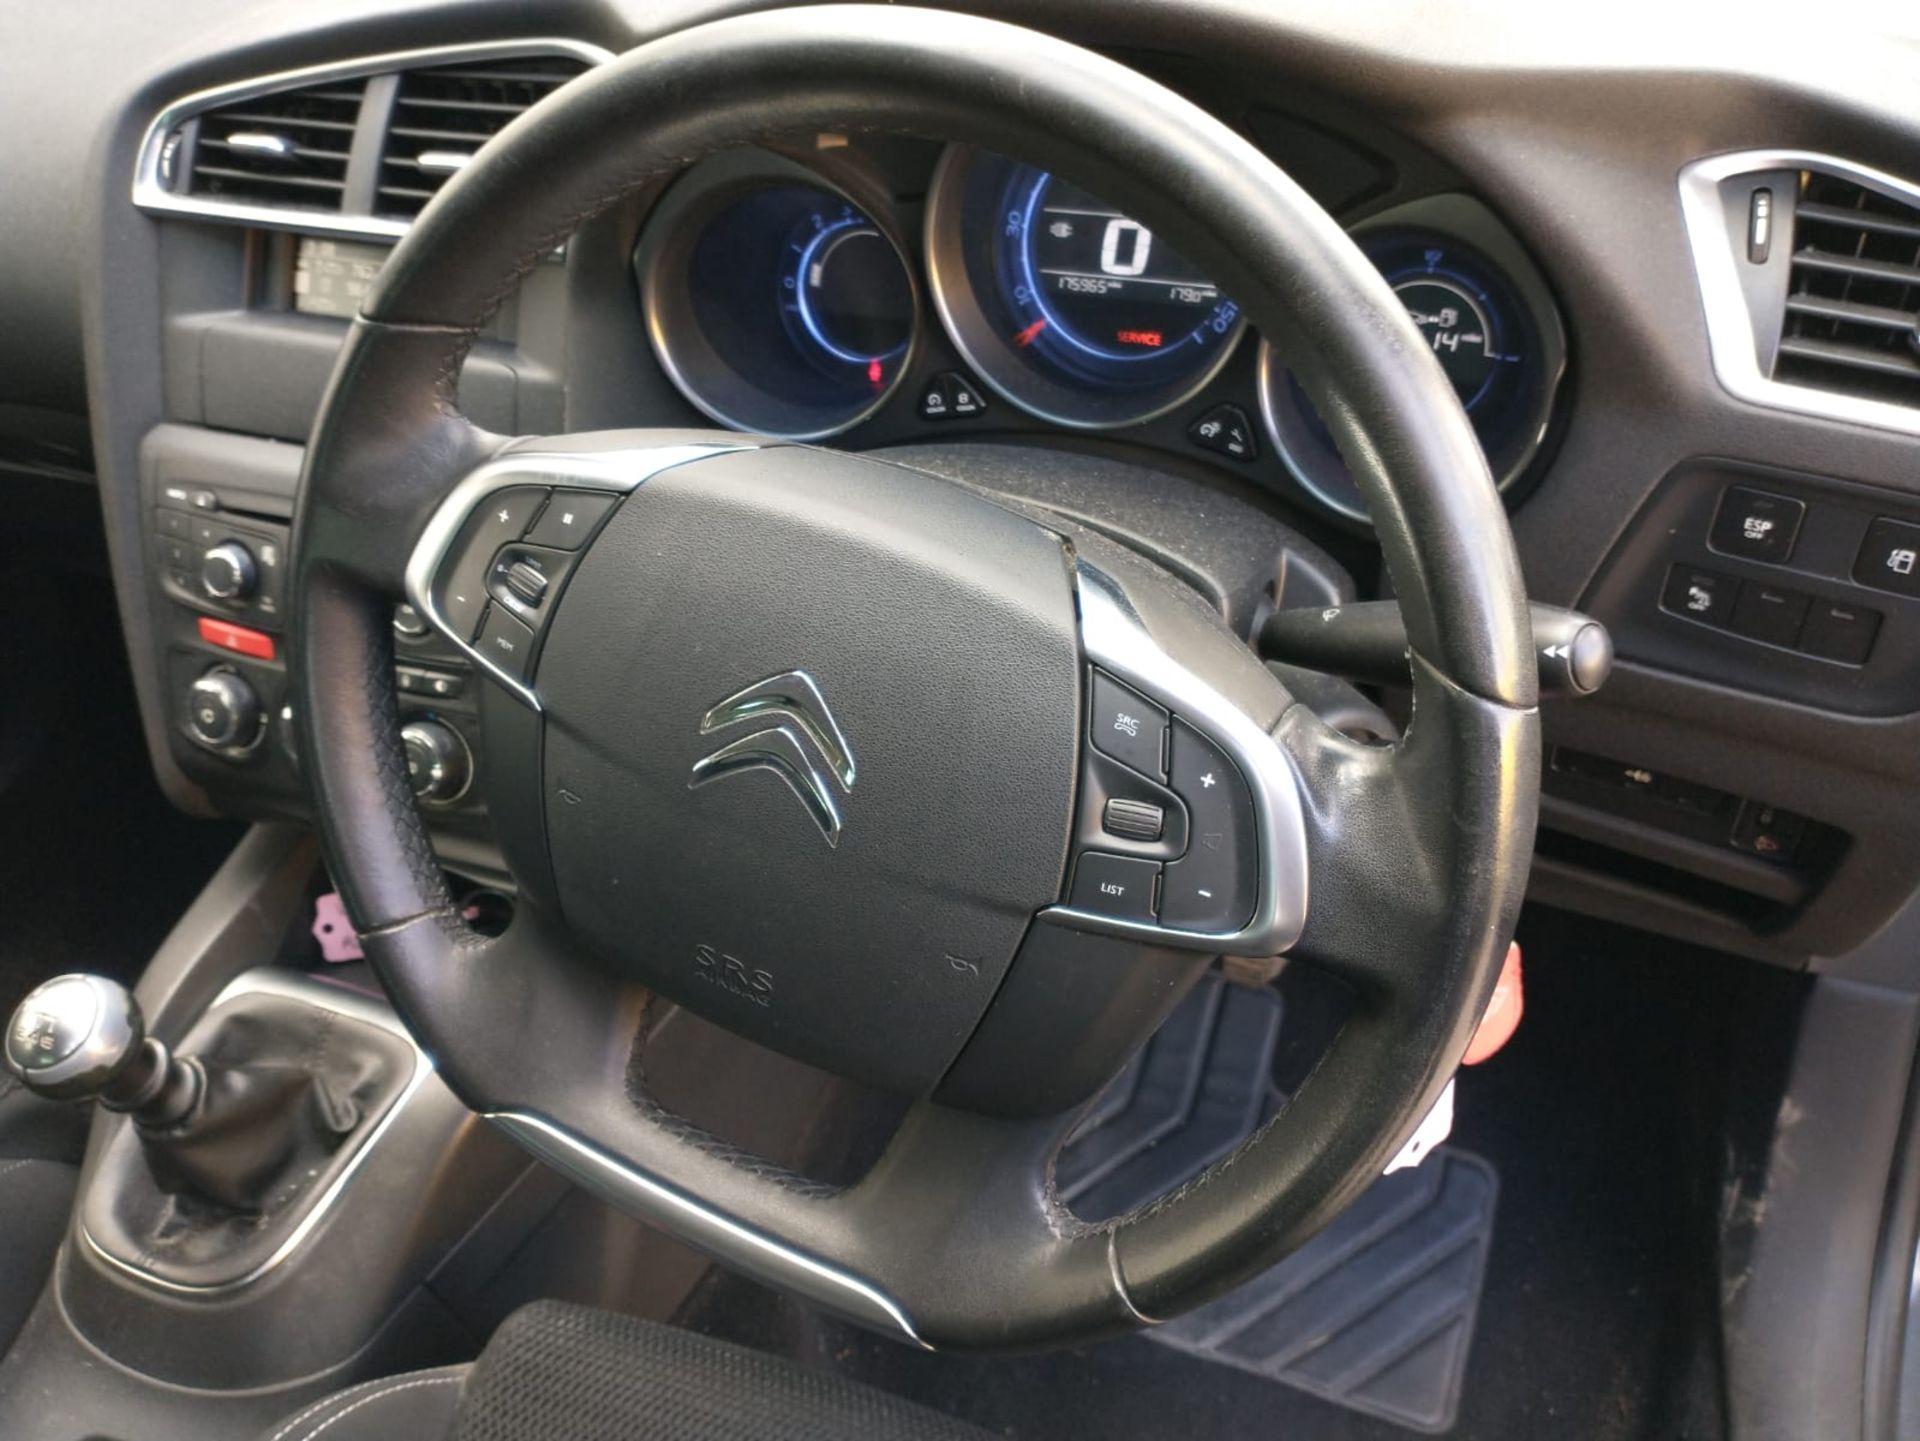 2013 Citroen C4 Selection Hdi 1.6 5Dr Hatchback - Image 11 of 15